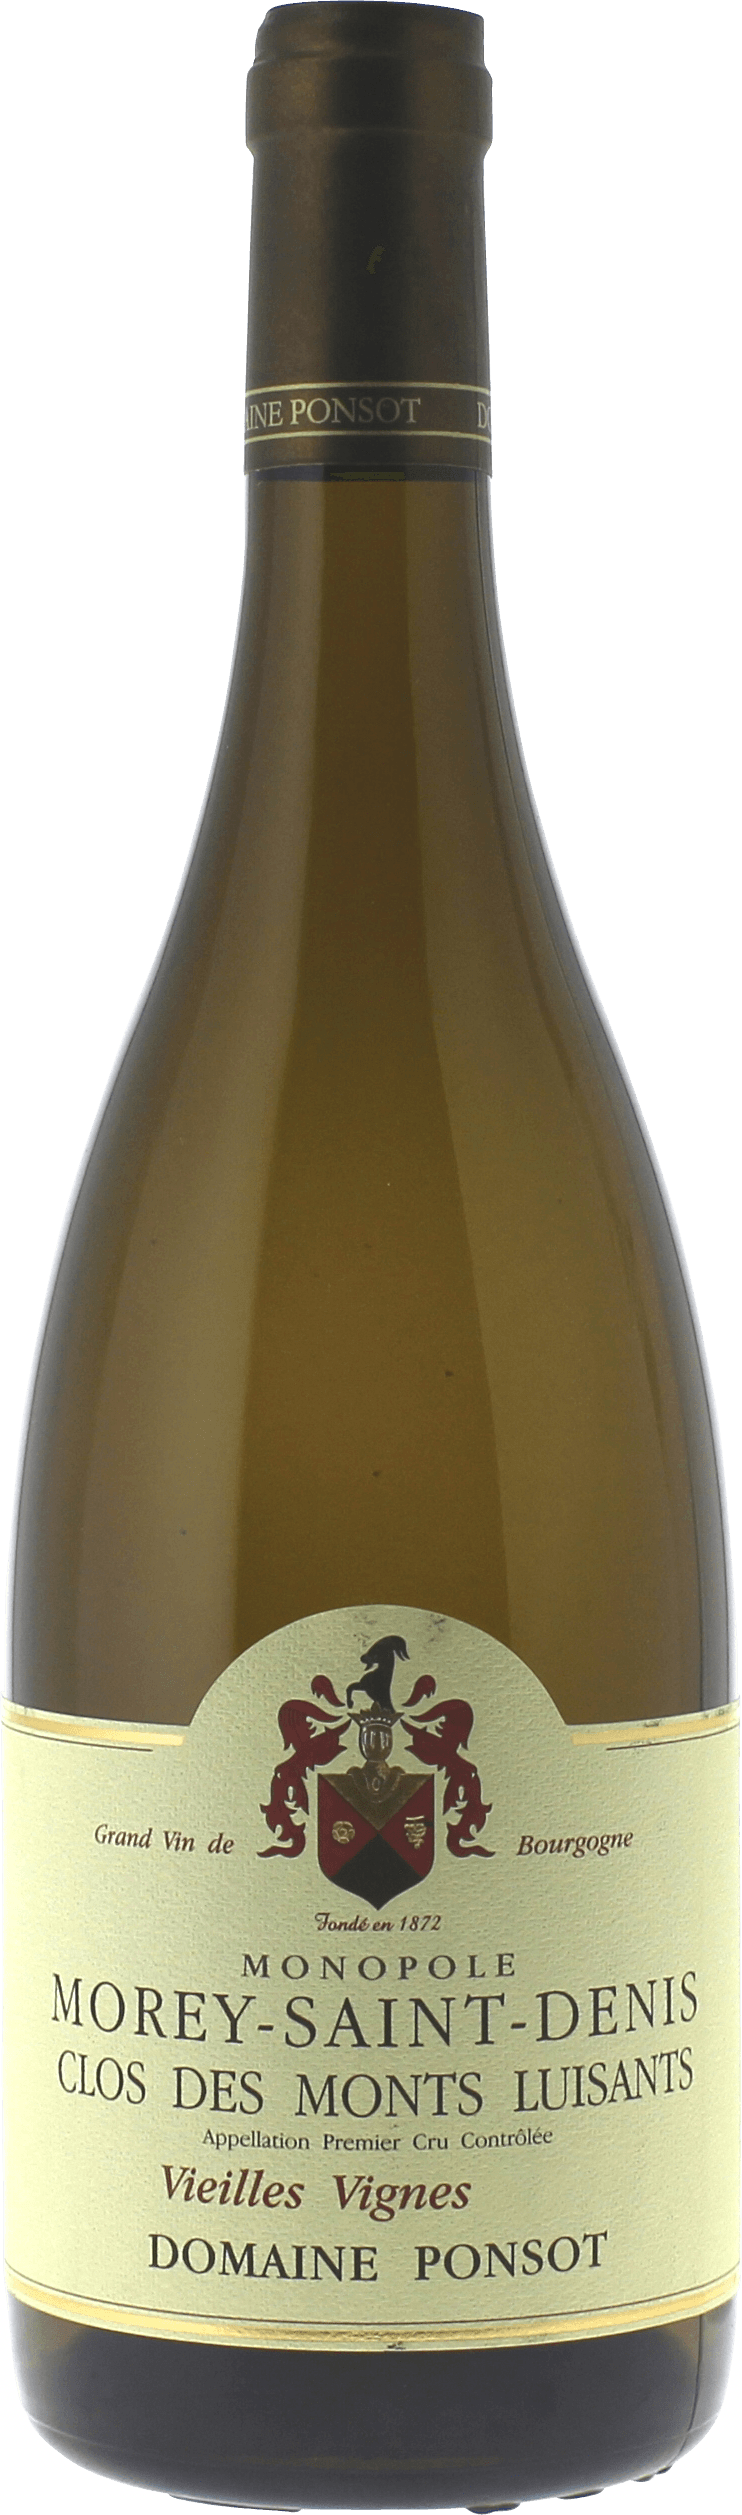 Morey saint denis 1er cru clos des monts luisants vieilles vignes 2017 Domaine PONSOT, Bourgogne blanc